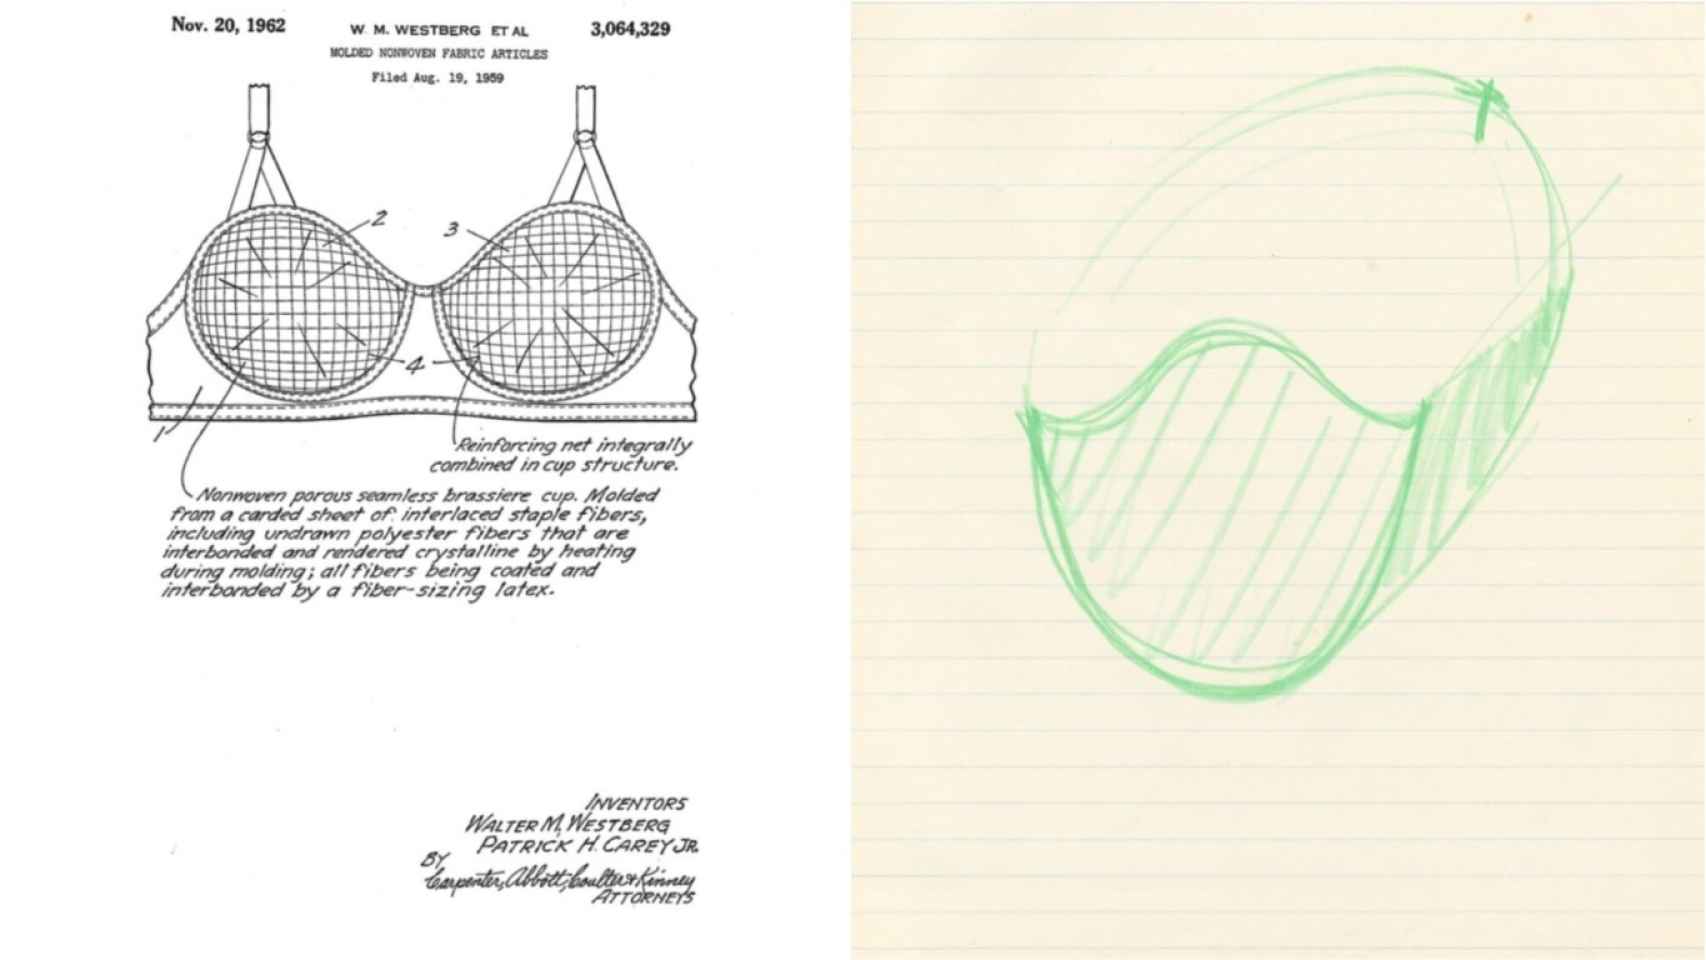 A una lado la patente del sujetador y al otro, el diseño de mascarilla que hizo Sara Little.